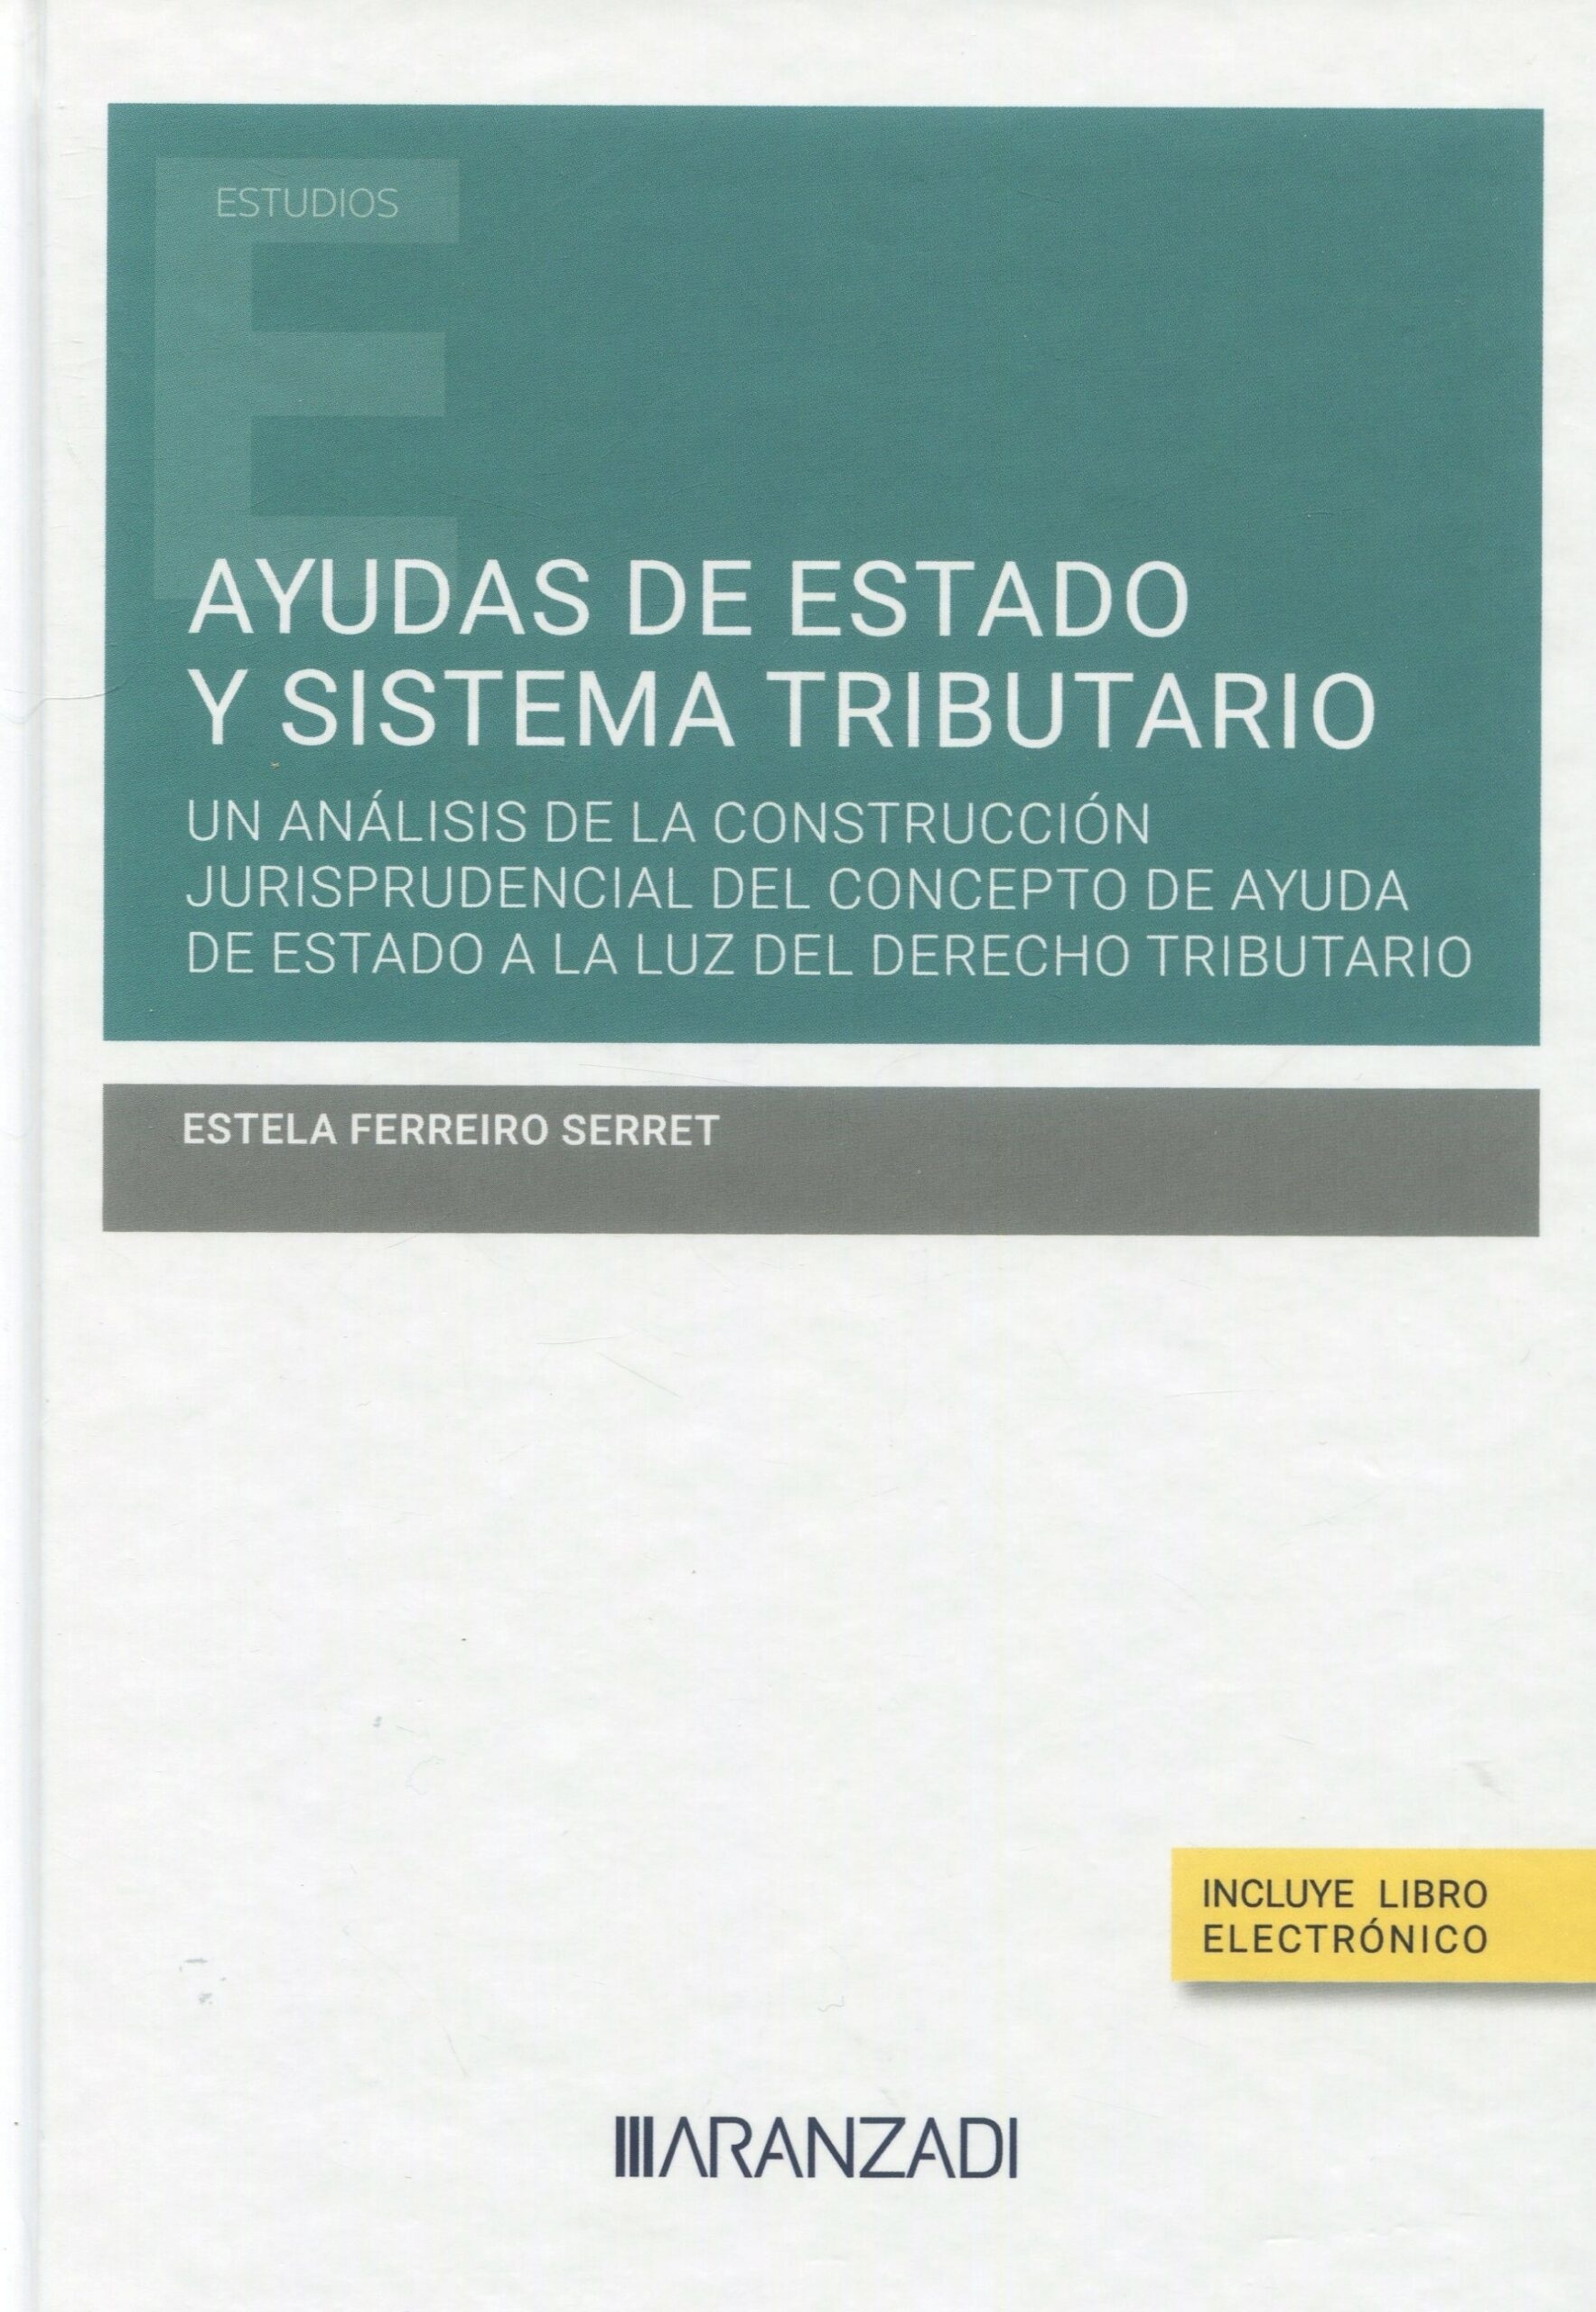 Ayudas de Estado y Sistema Tributario (Papel + e-book) "Un análisis de la construcción jurisprudencial del concepto de ayuda de estado a la luz del derecho tributario"